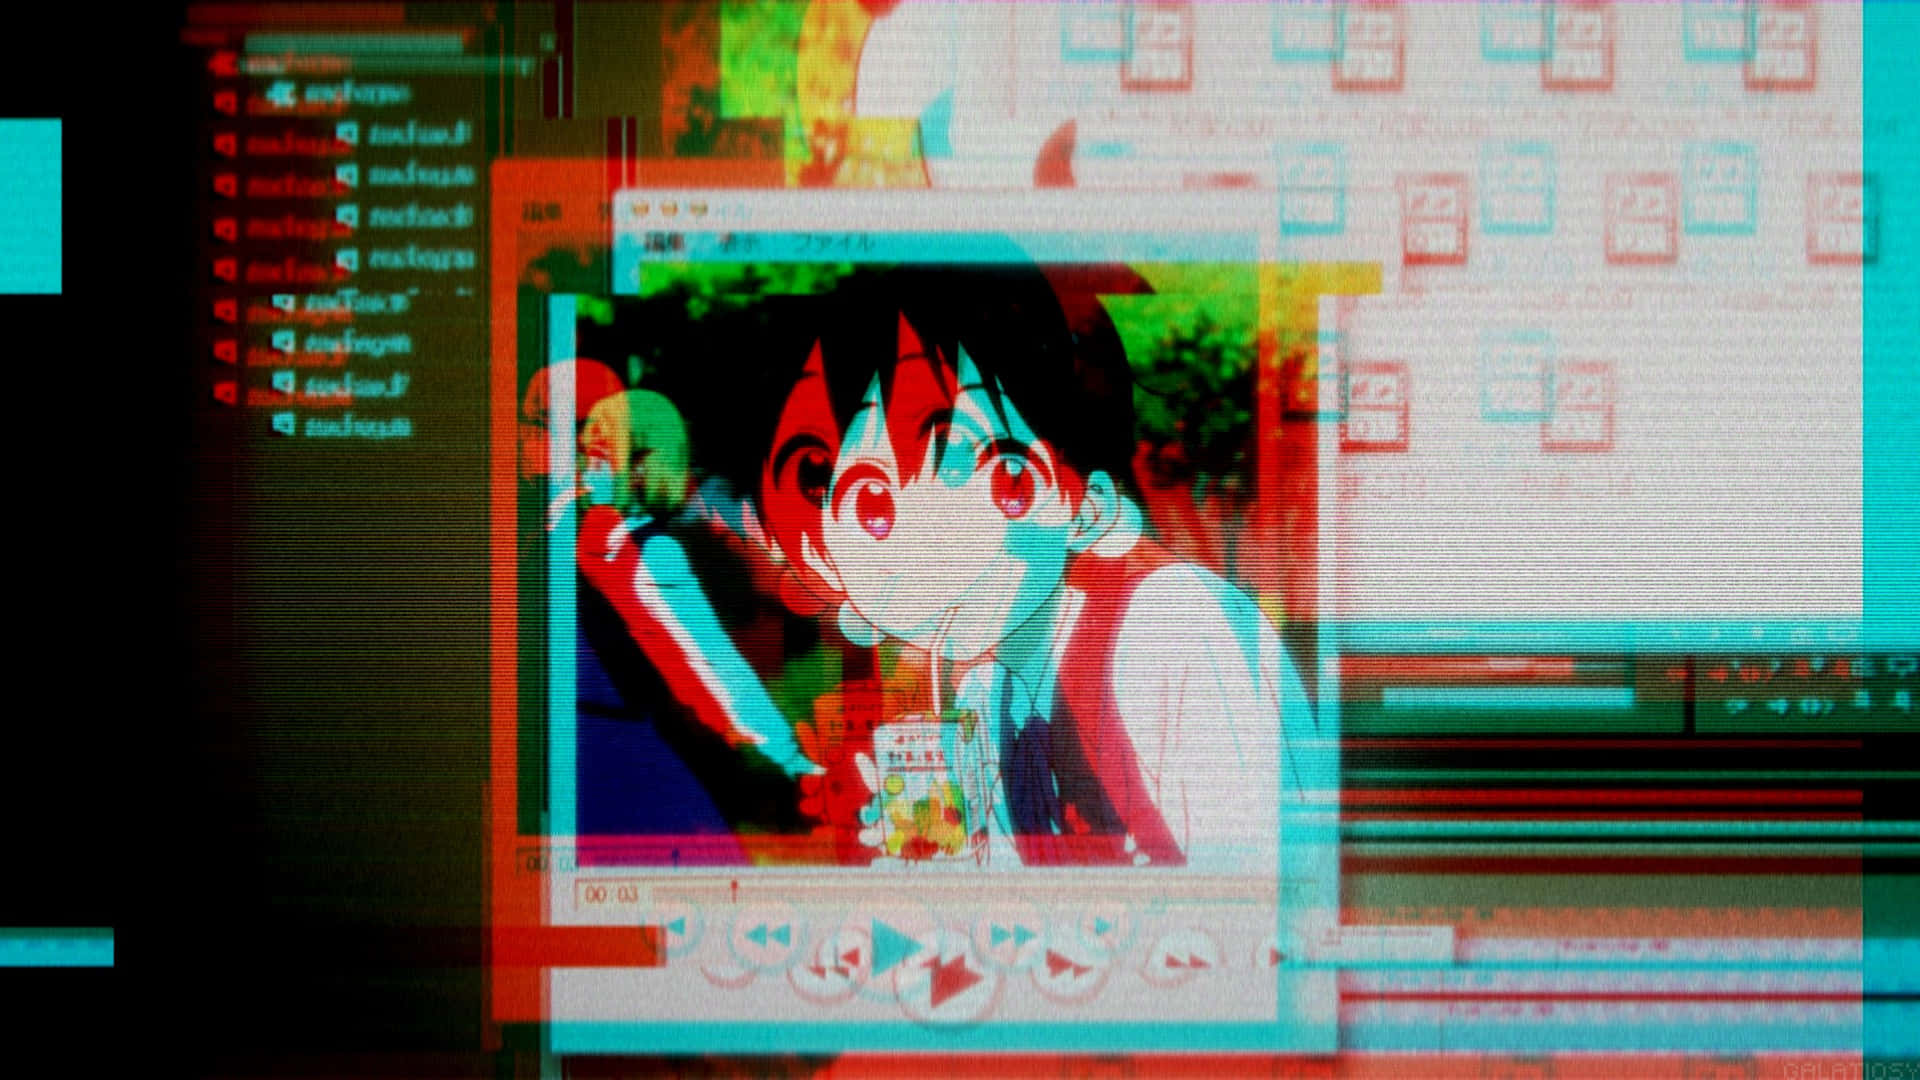 Umatela De Computador Com Personagens De Anime Nela.